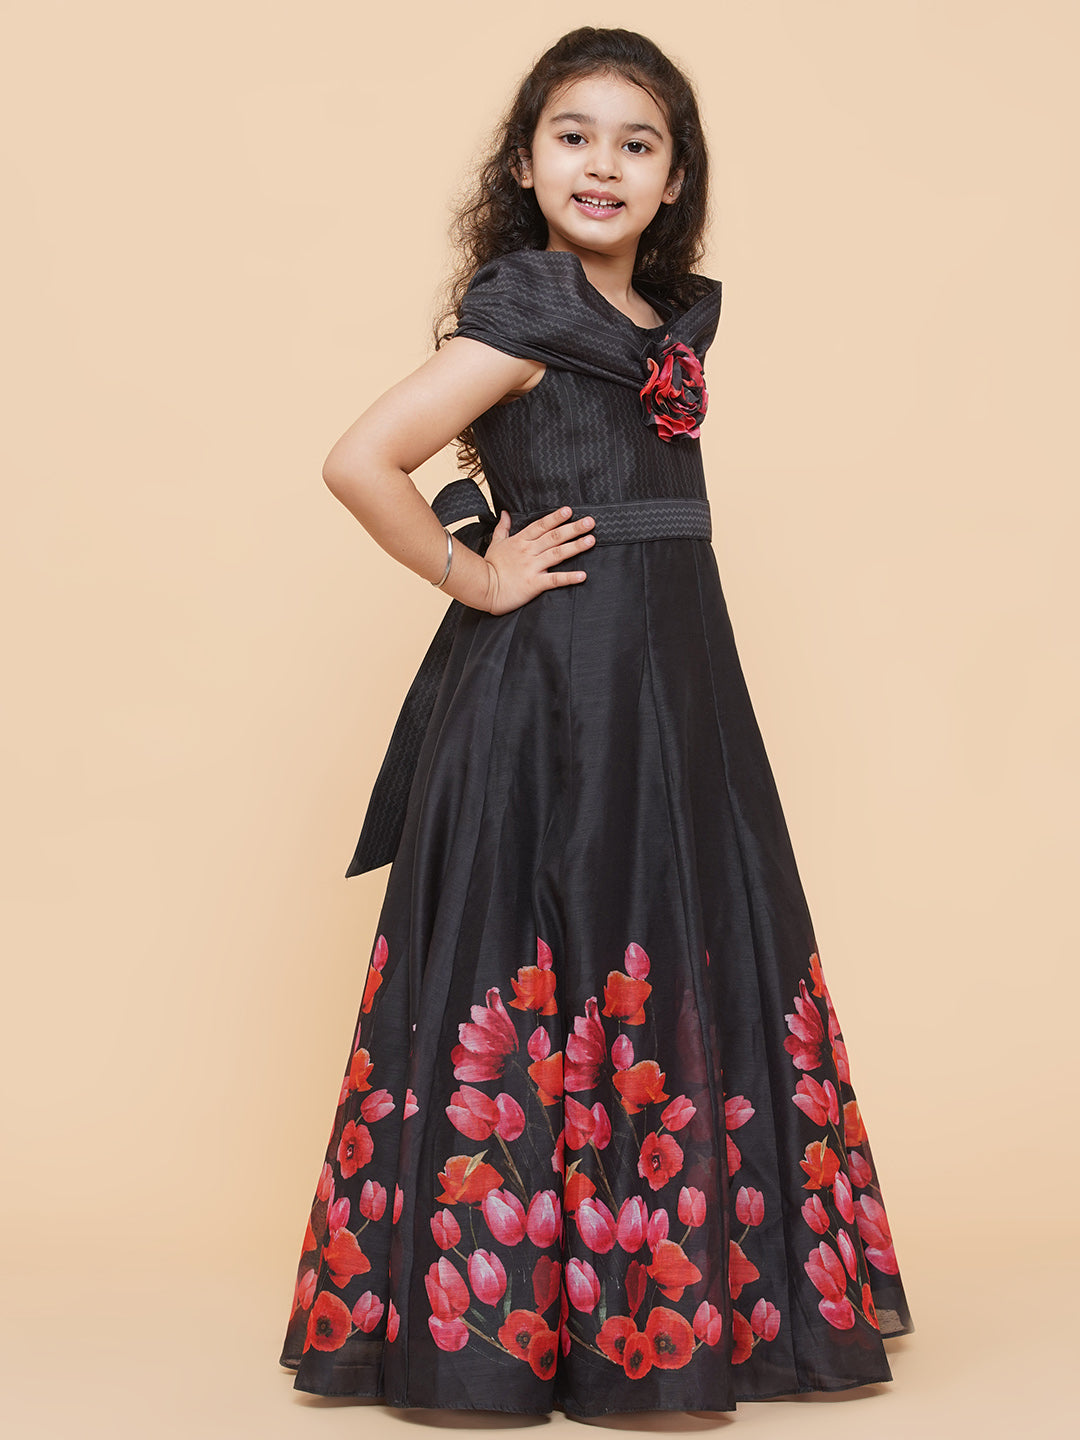 Finelylove Black Dress For Funeral Spring Dress For Girls A-line Short  Short Sleeve Solid Black L - Walmart.com